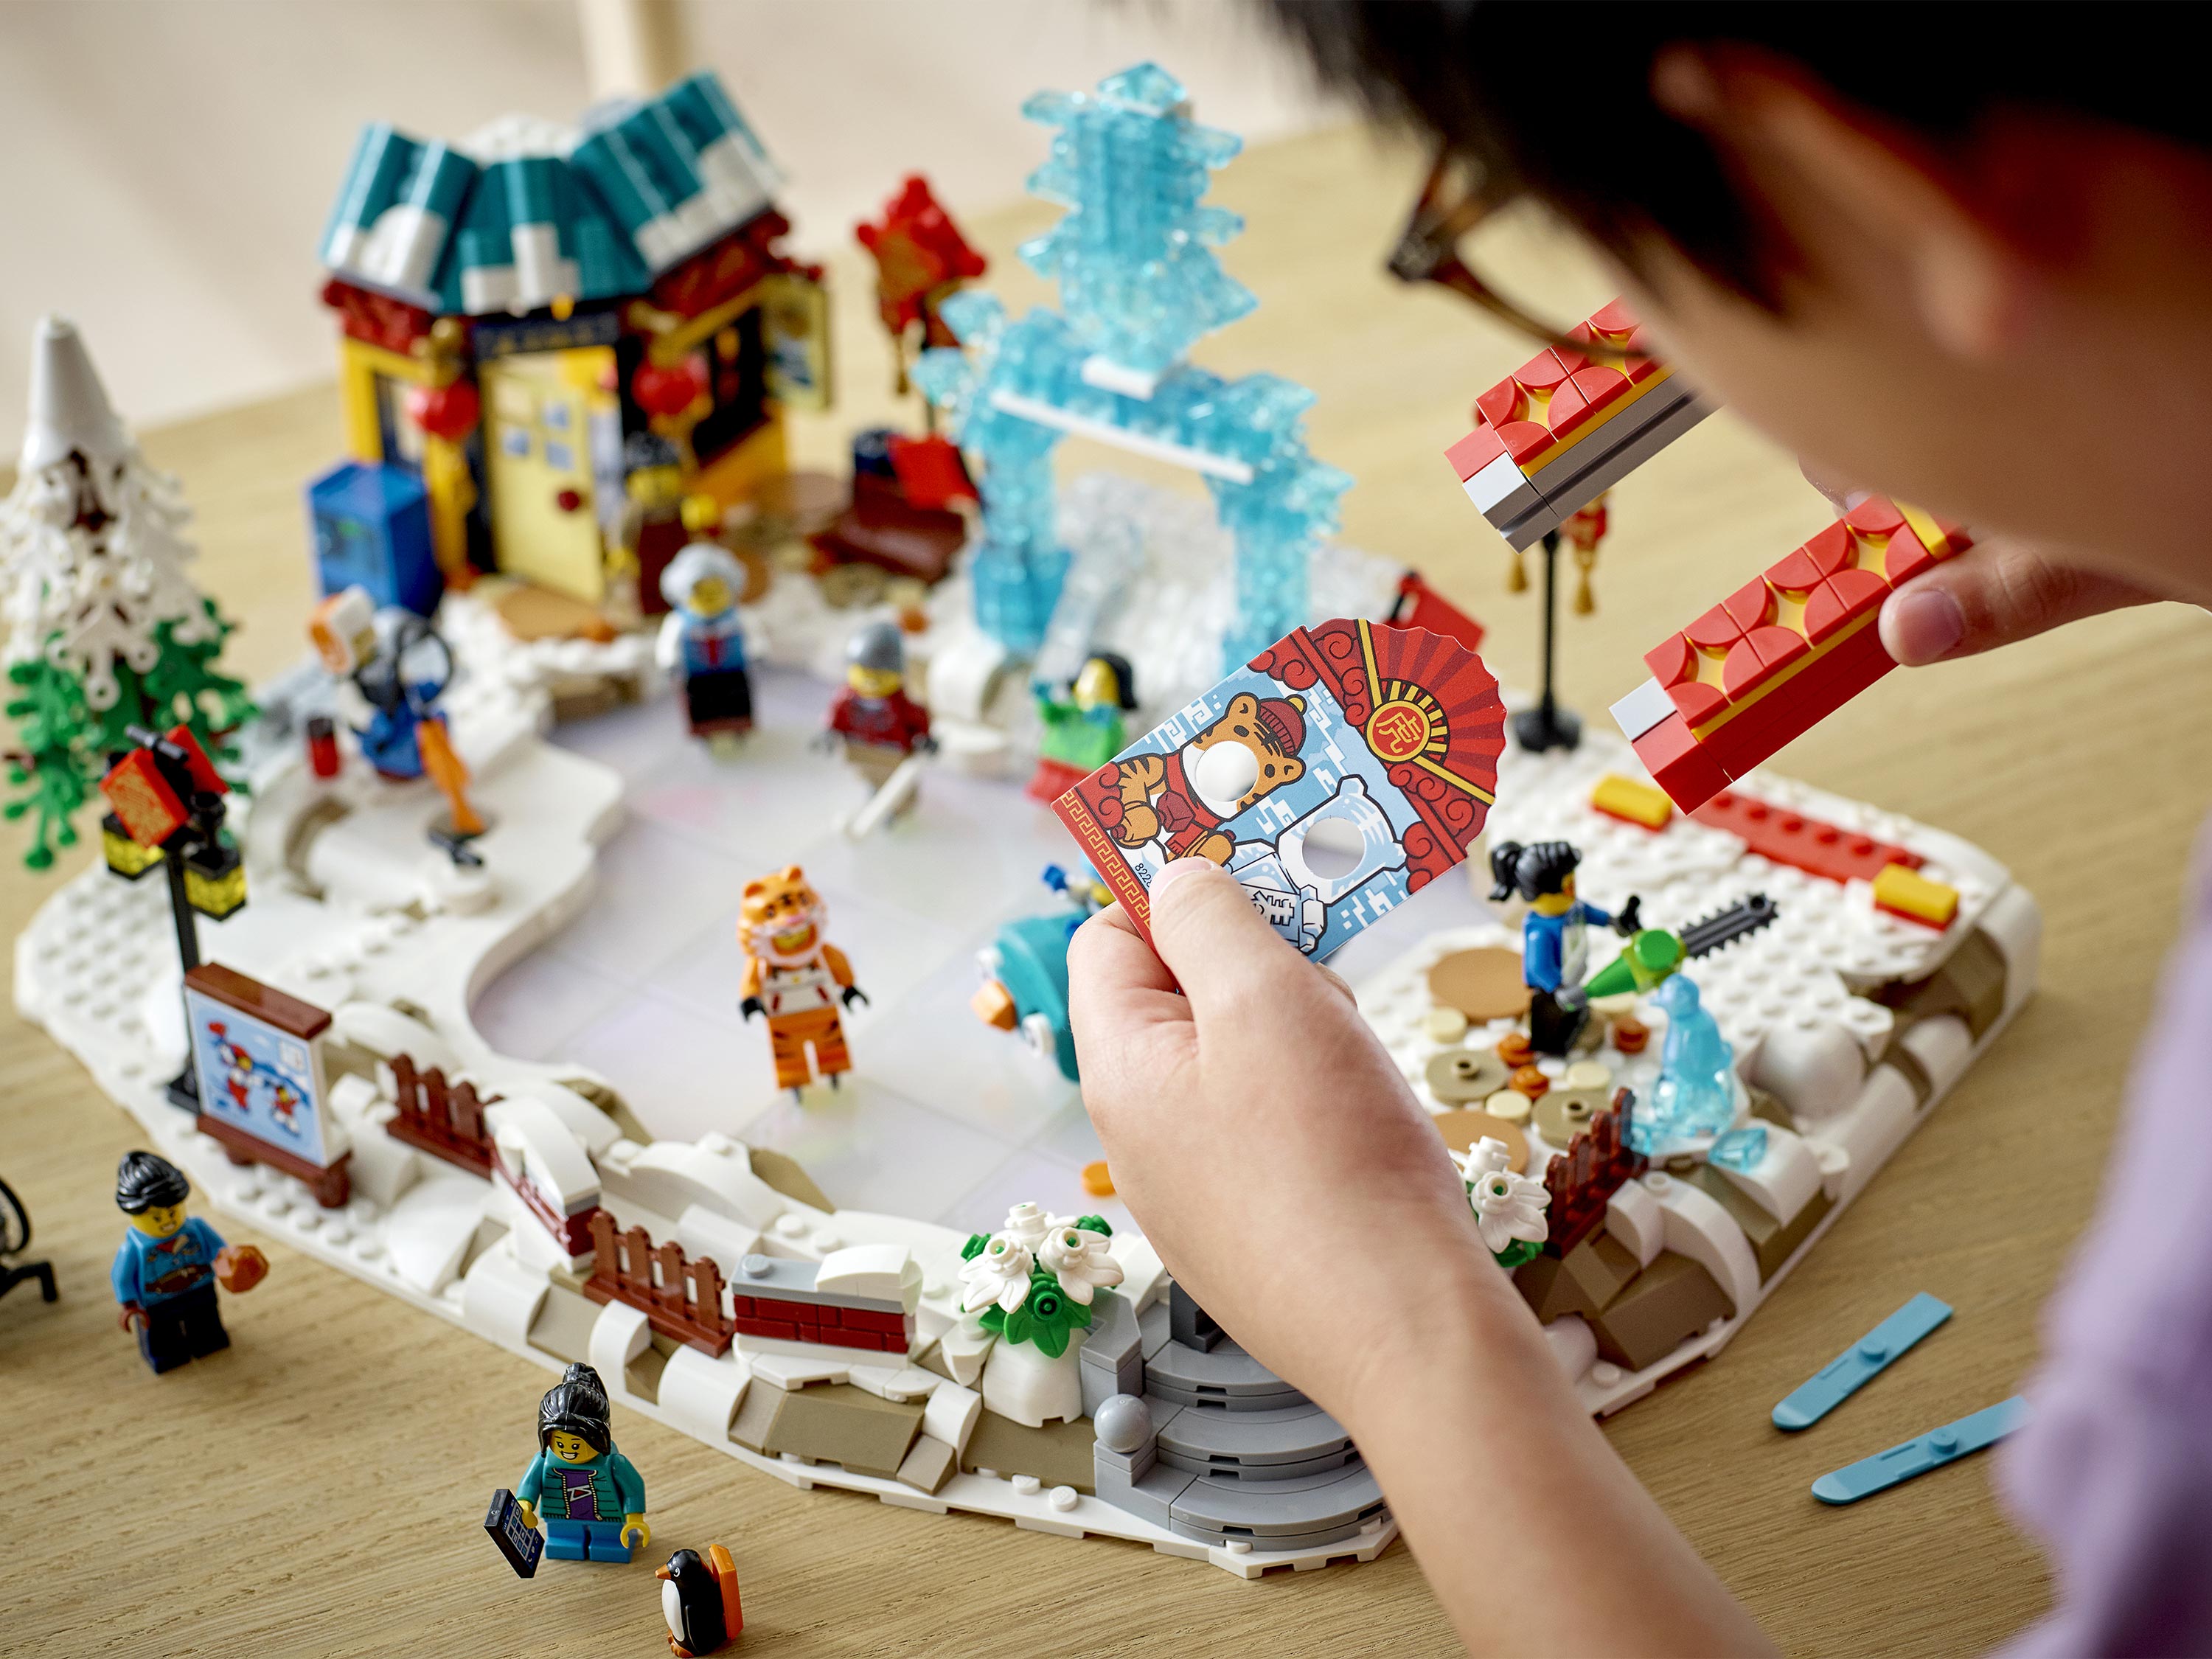 Набор LEGO 80109 Ледяной фестиваль по лунному Новому году